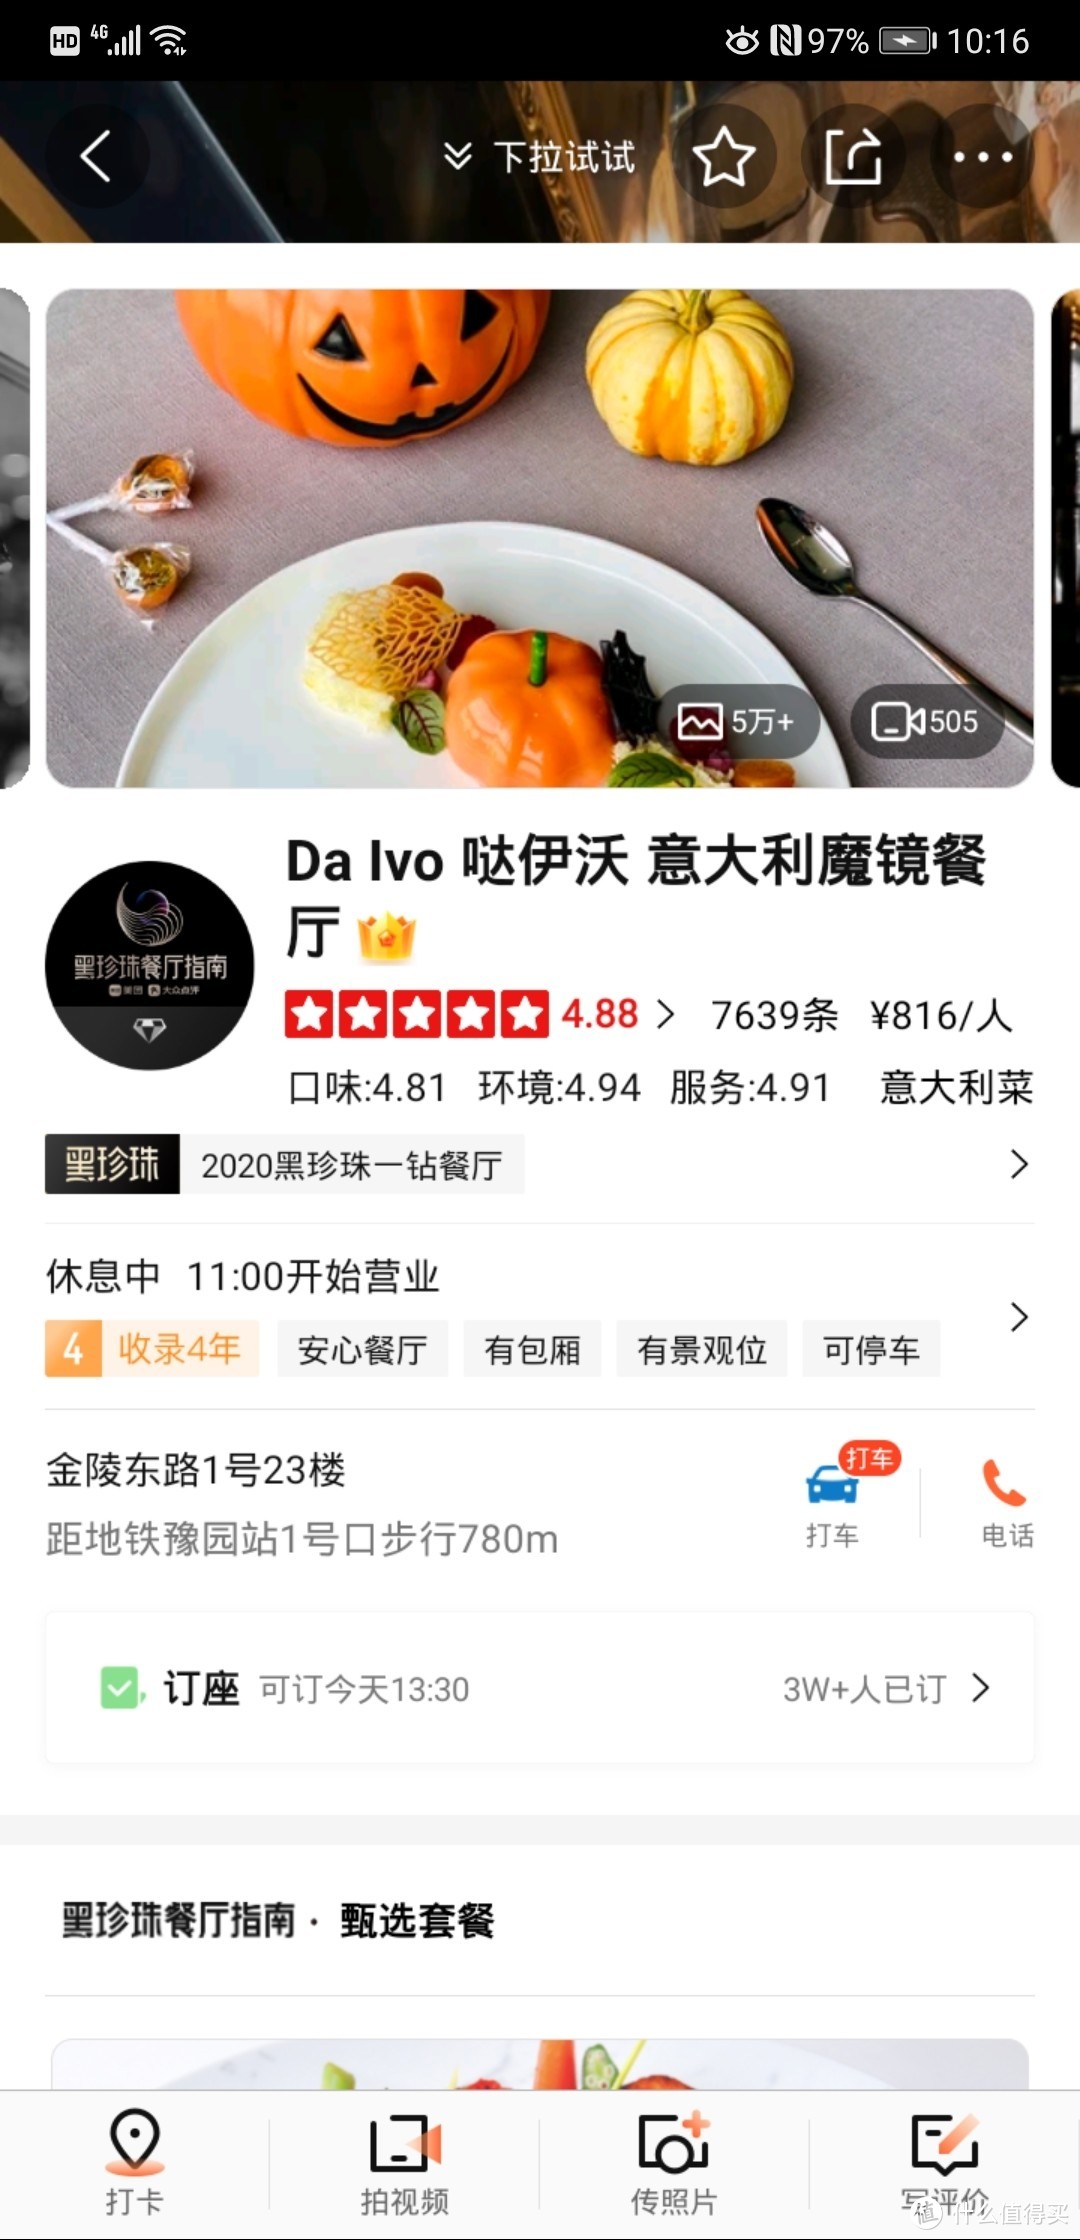 【探店】外滩平价江景餐厅Dalvo之初探